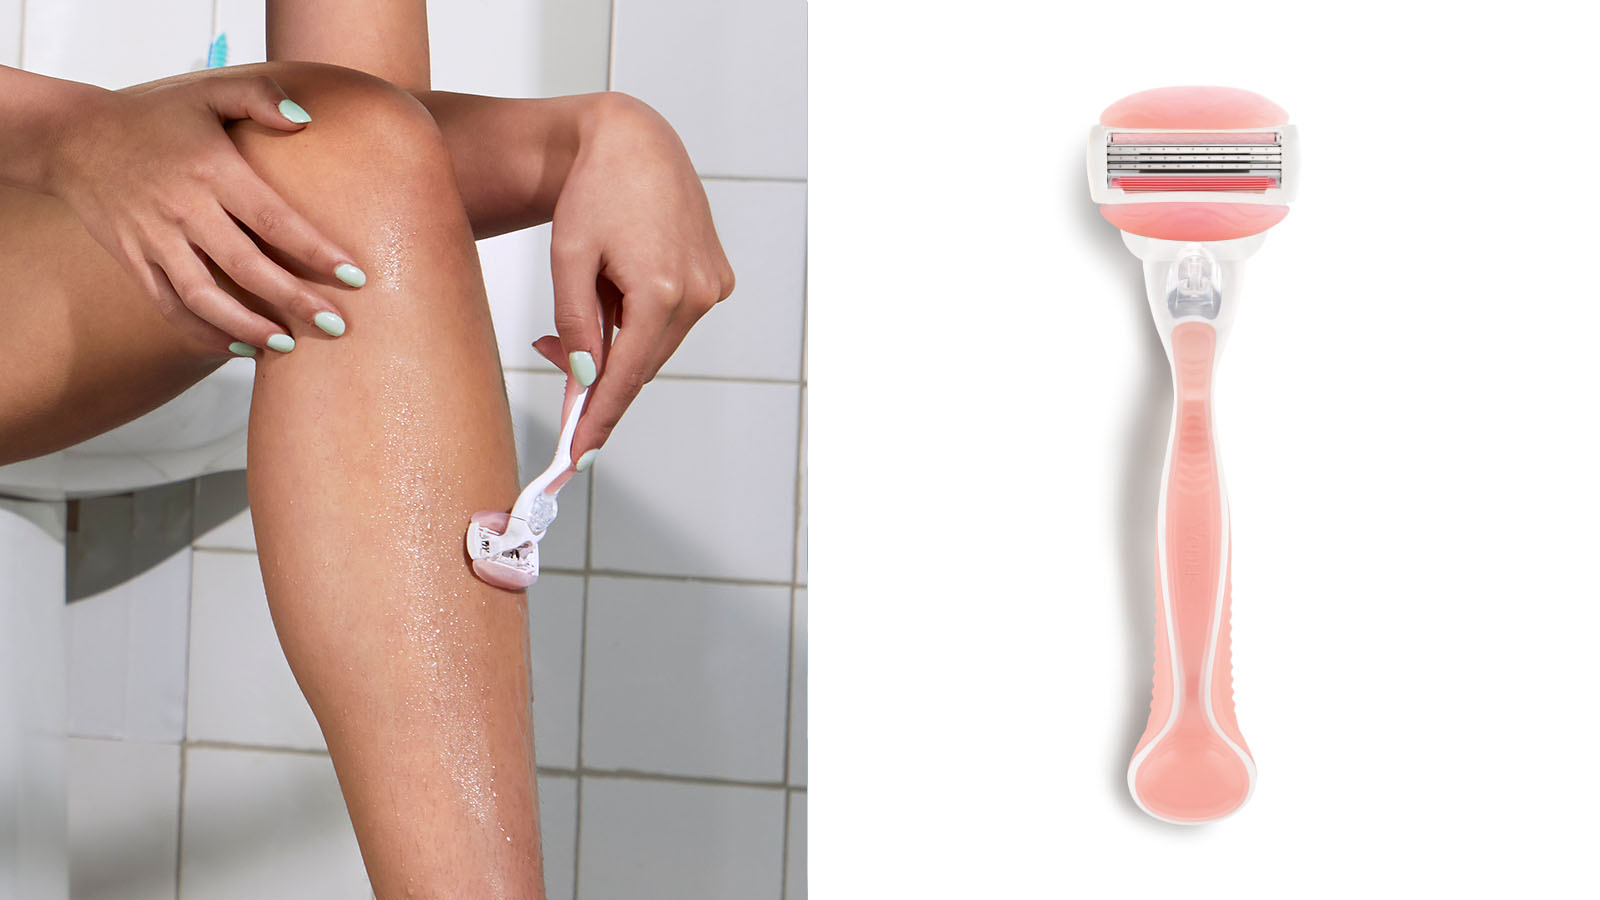 Woman Shaving Her Legs and Venus Women’s Razor